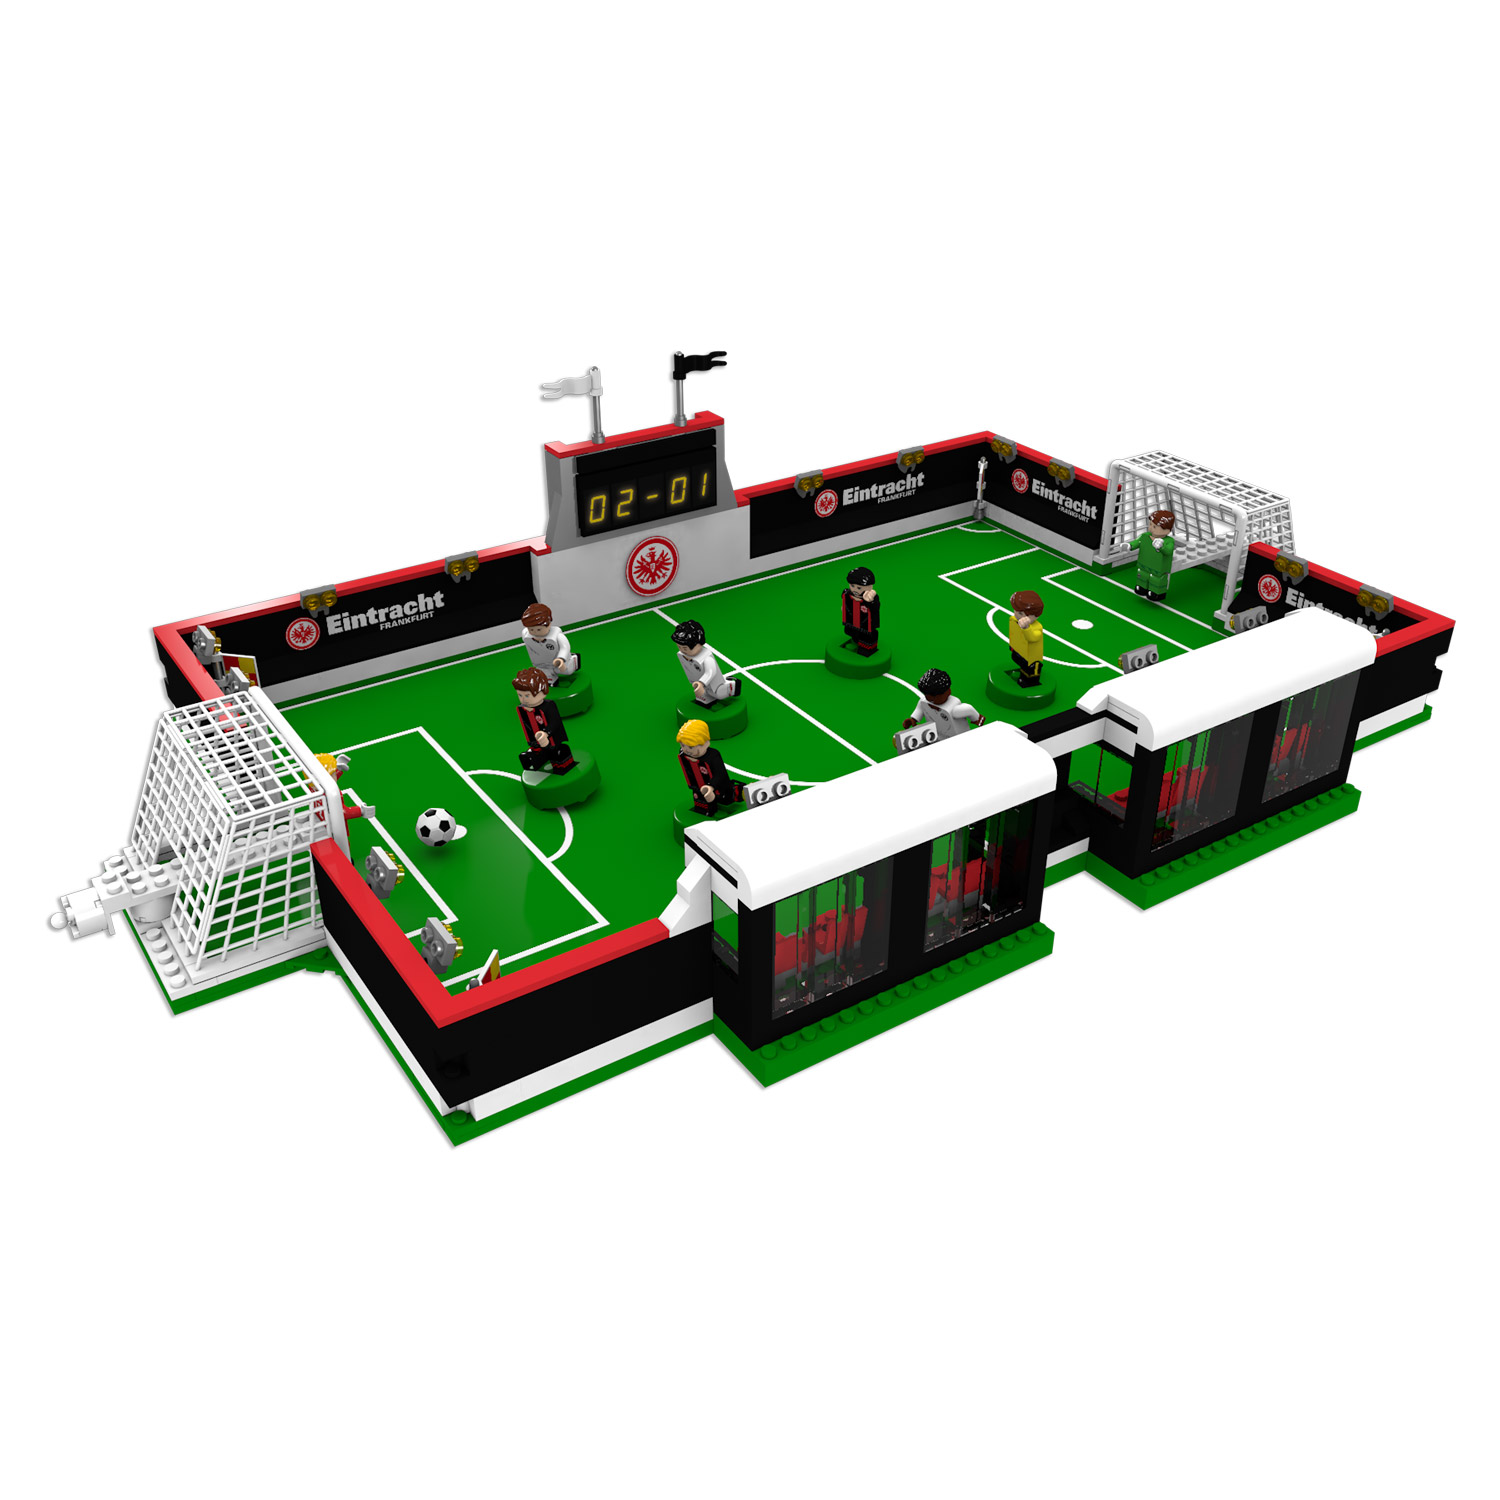 Bild 2: Bausatz Fußballfeld